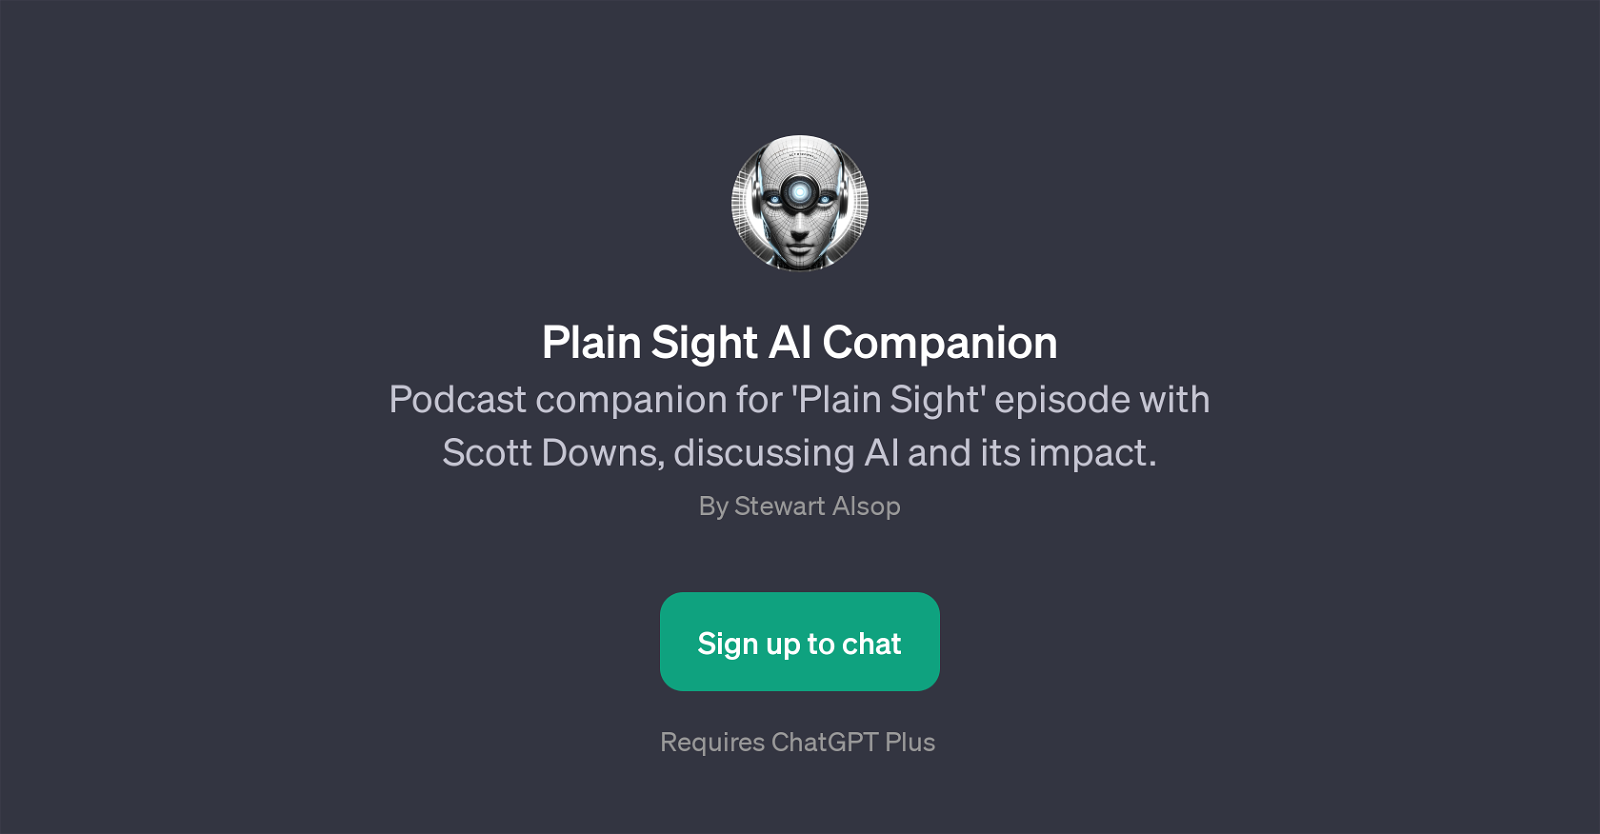 Plain Sight AI Companion website